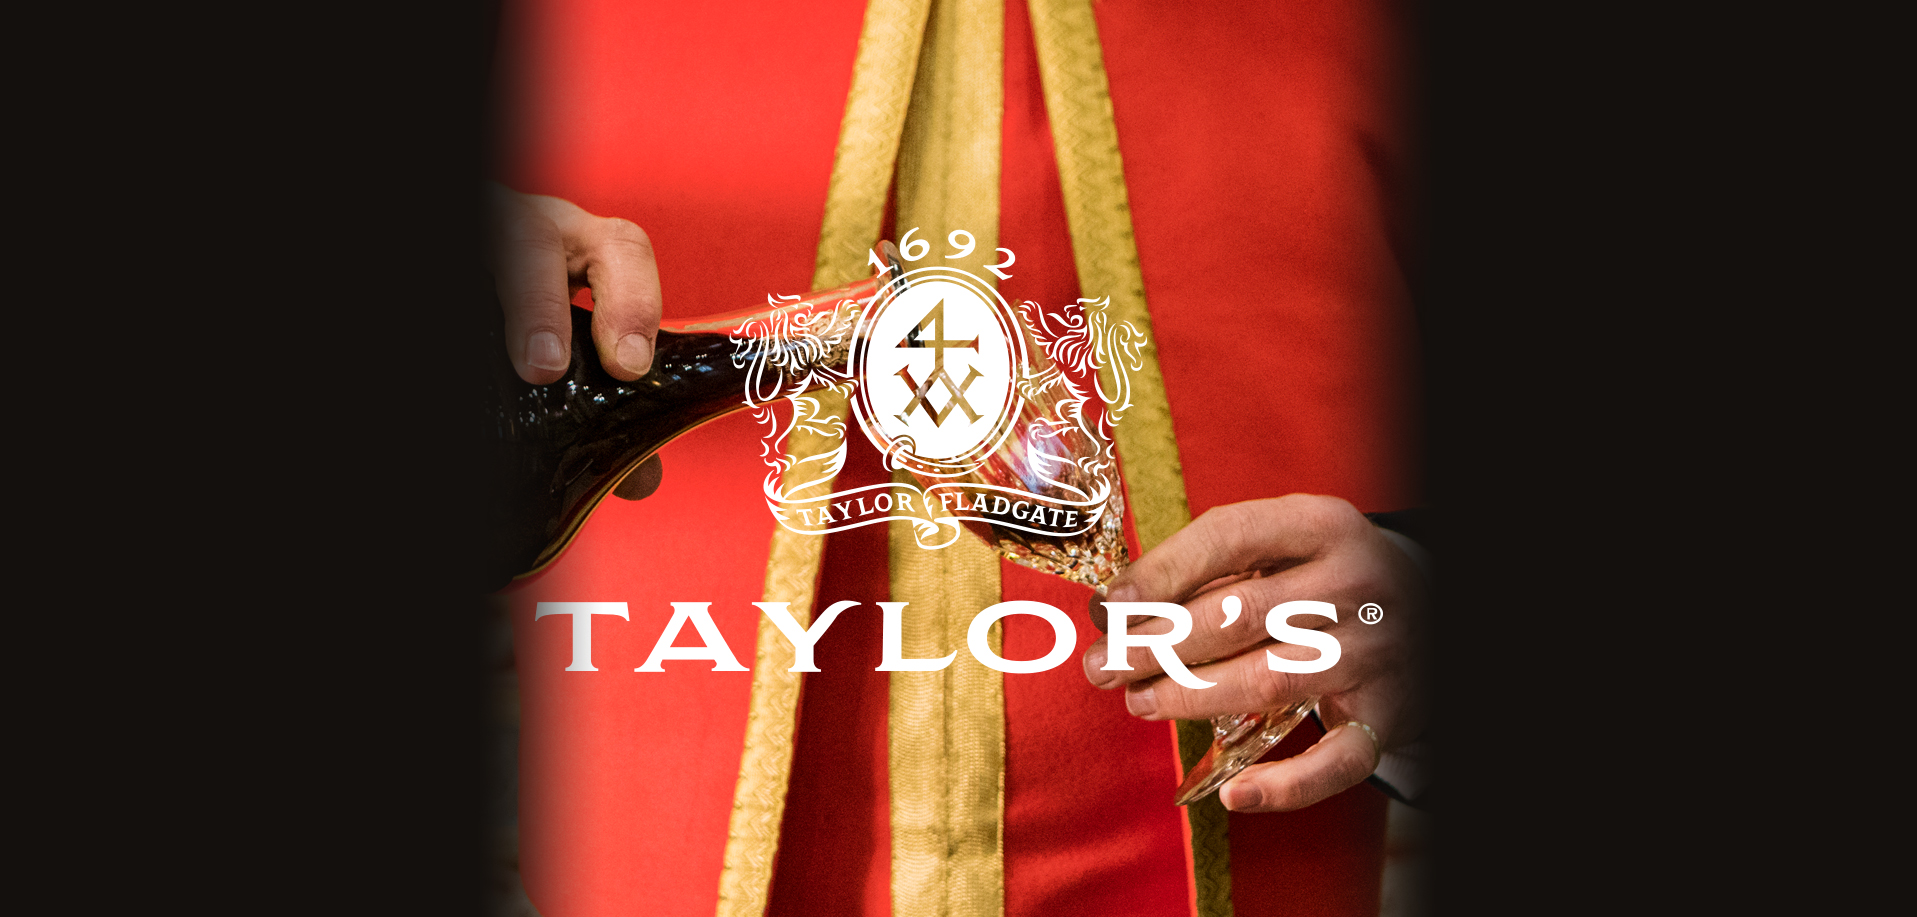 Taylor’s brengt zeldzame 125 jaar oude Single Harvest Tawny Port uit